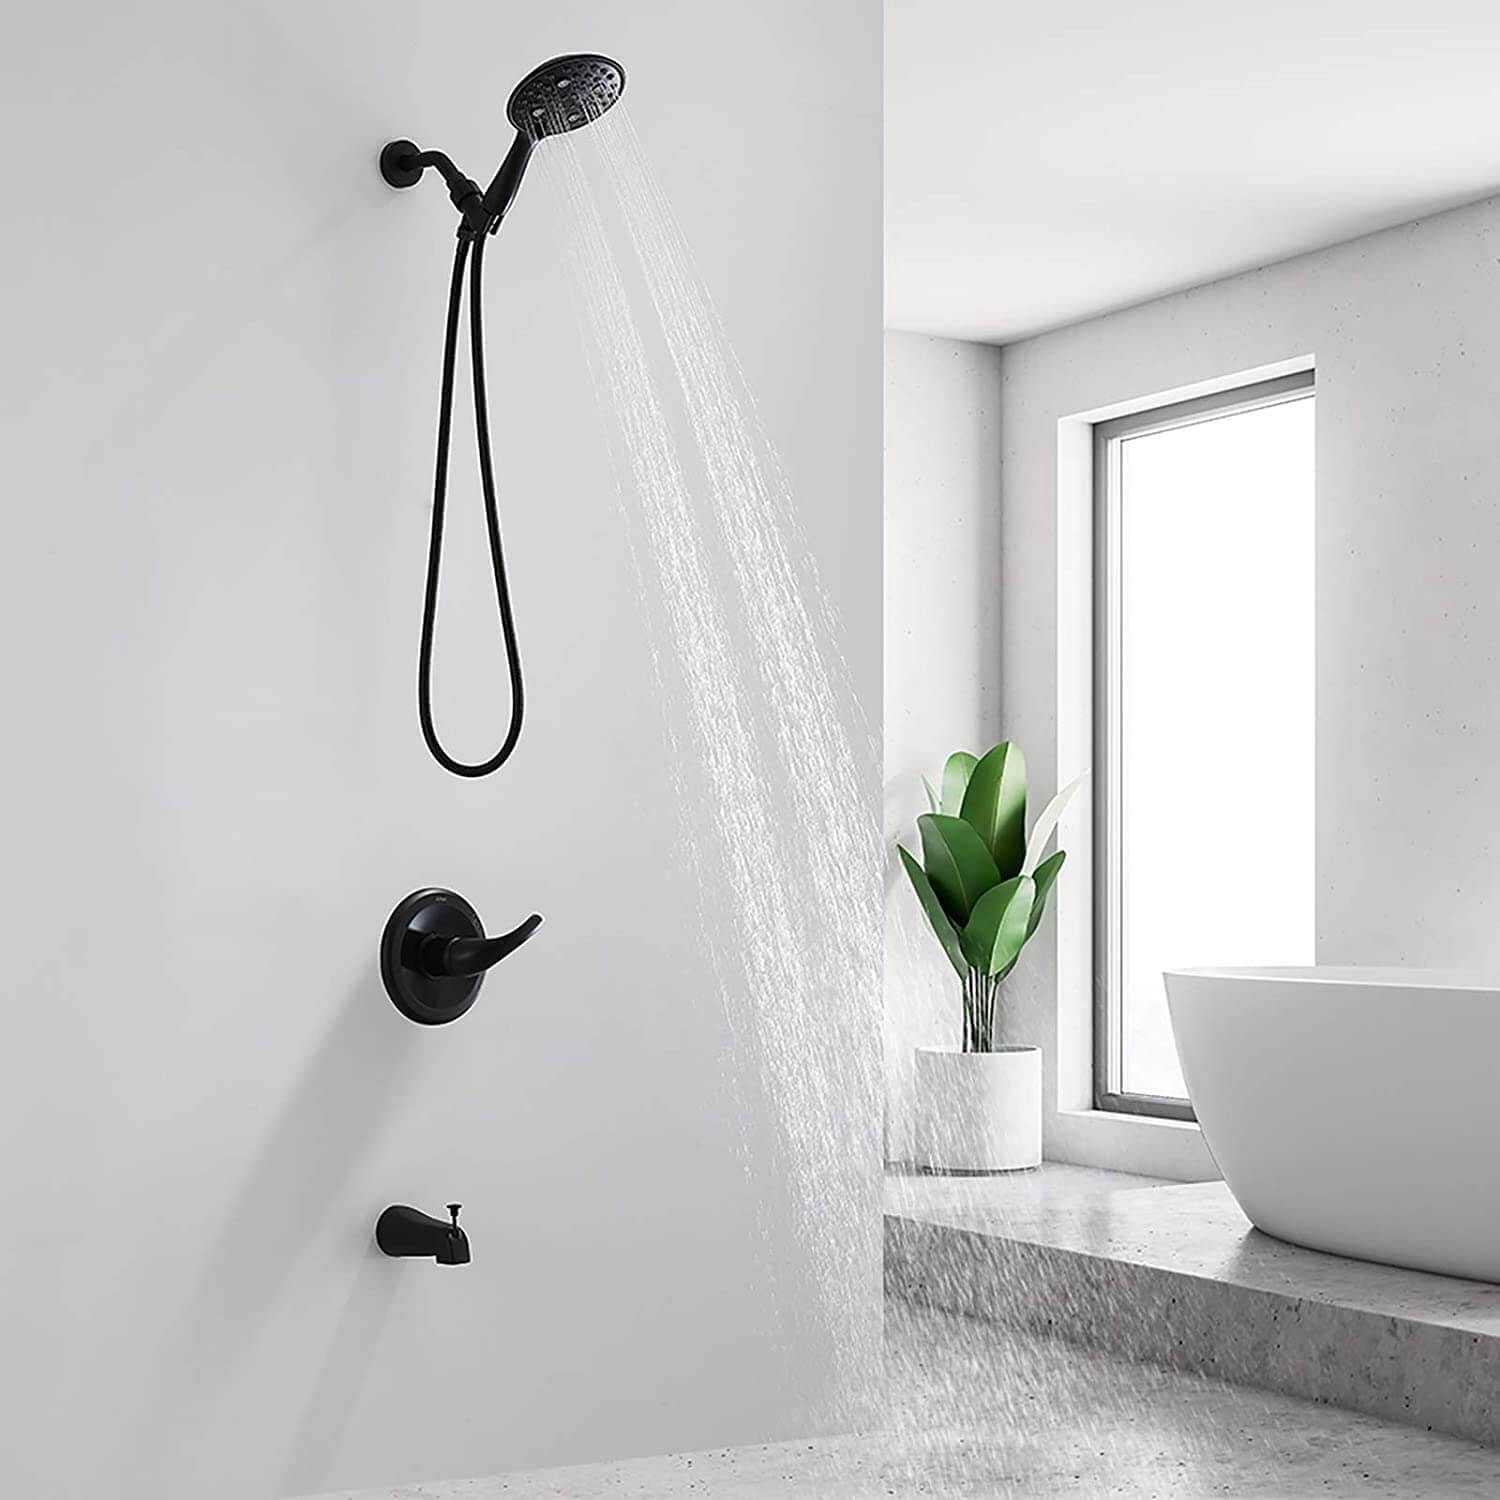 Matte Black Dual-Function Shower Faucet